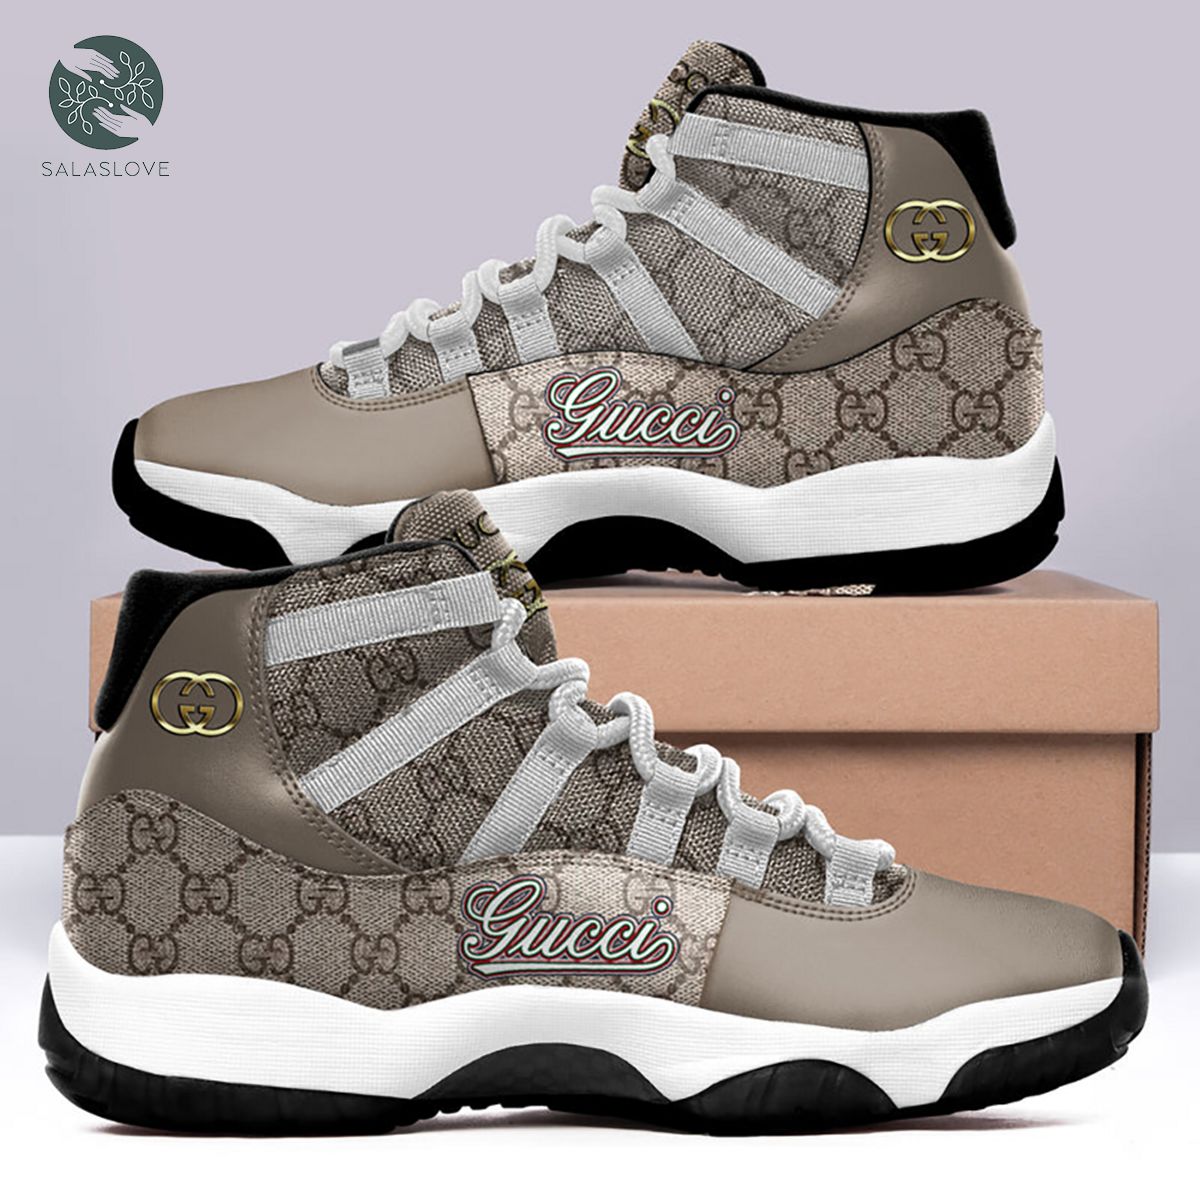 Gucci Air Jordan 11 Sneakers Shoes Hot